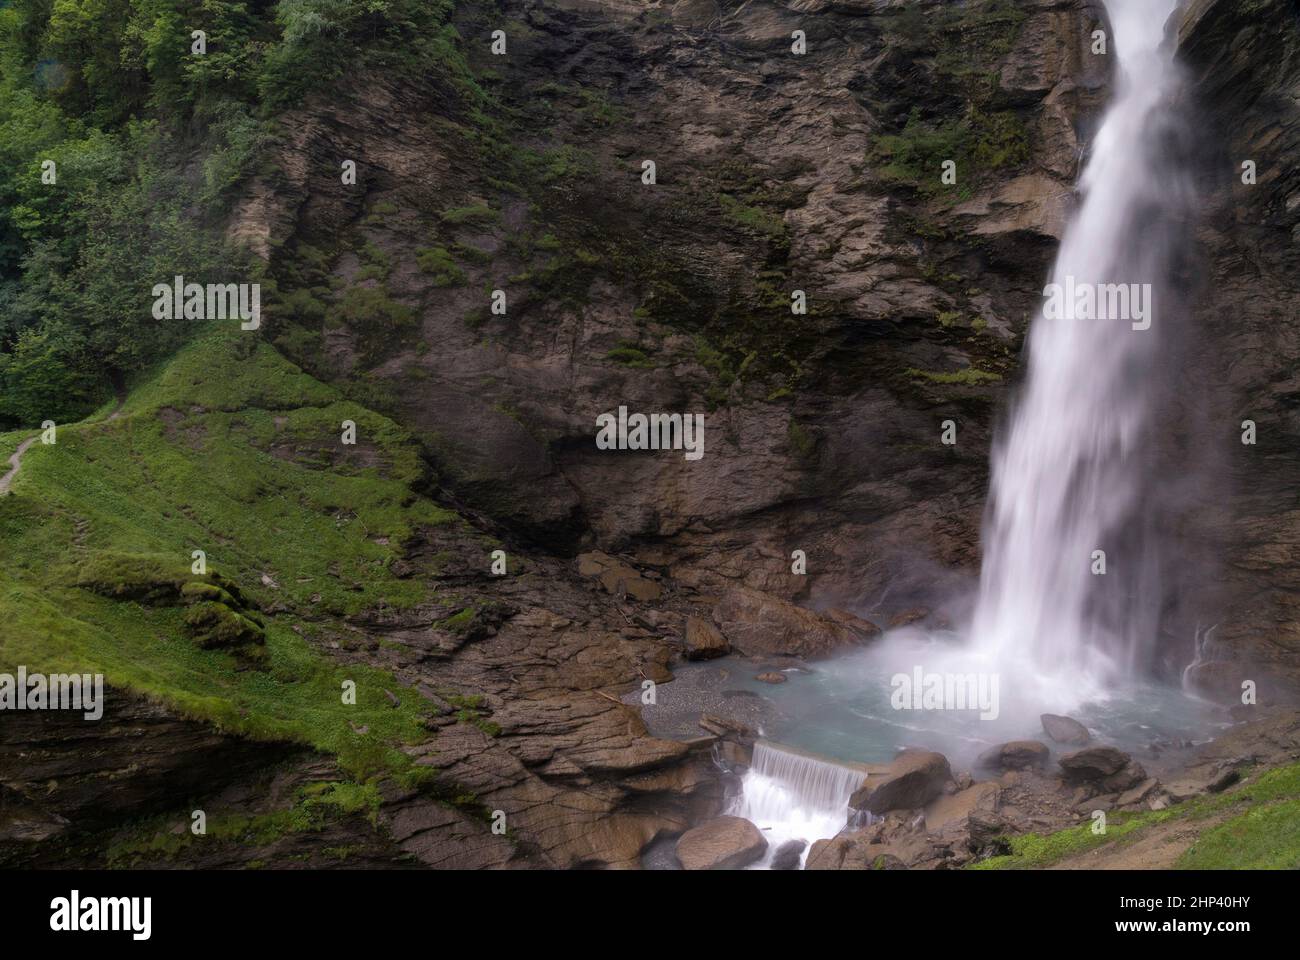 Le cascate di Reichenbach, nei pressi della città svizzera di Meiringen, nella regione dell'Oberland bernese, sono spettacolari. E' anche una posizione famosa in tutto il mondo in t Foto Stock